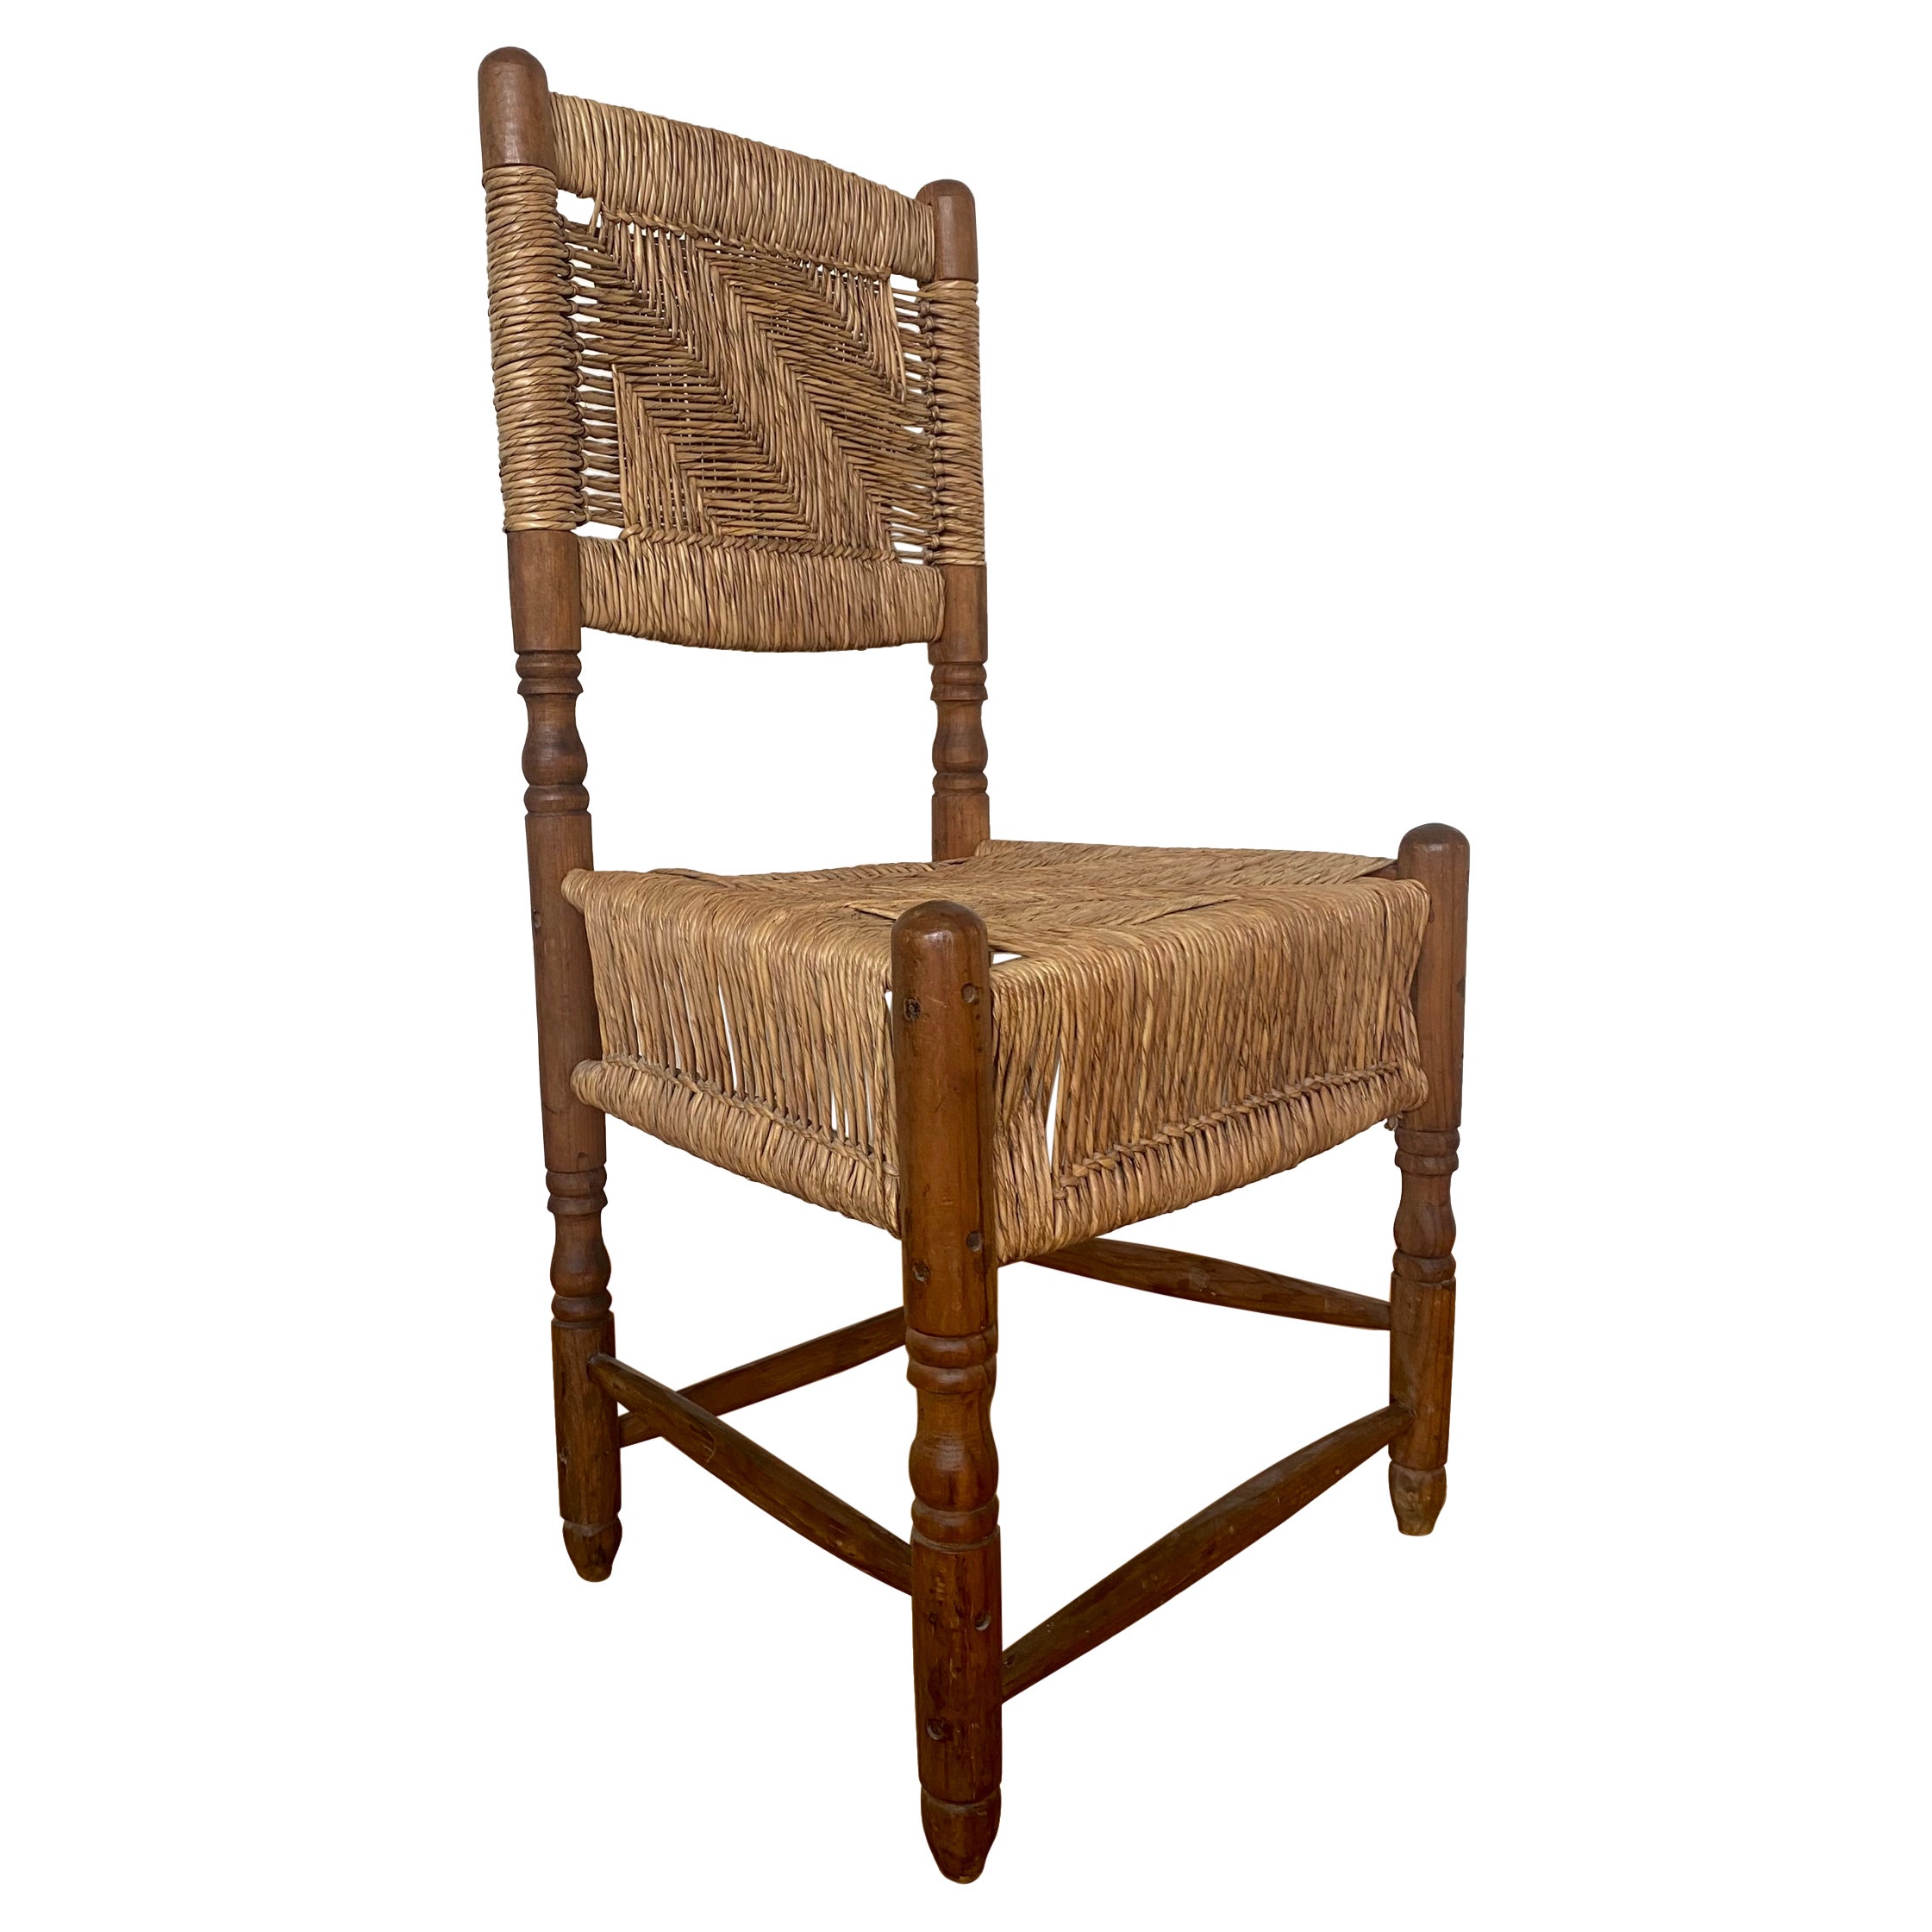 Rustikaler, Vintage-Holzstuhl aus Nordamerika mit geflochtenem Sitz.